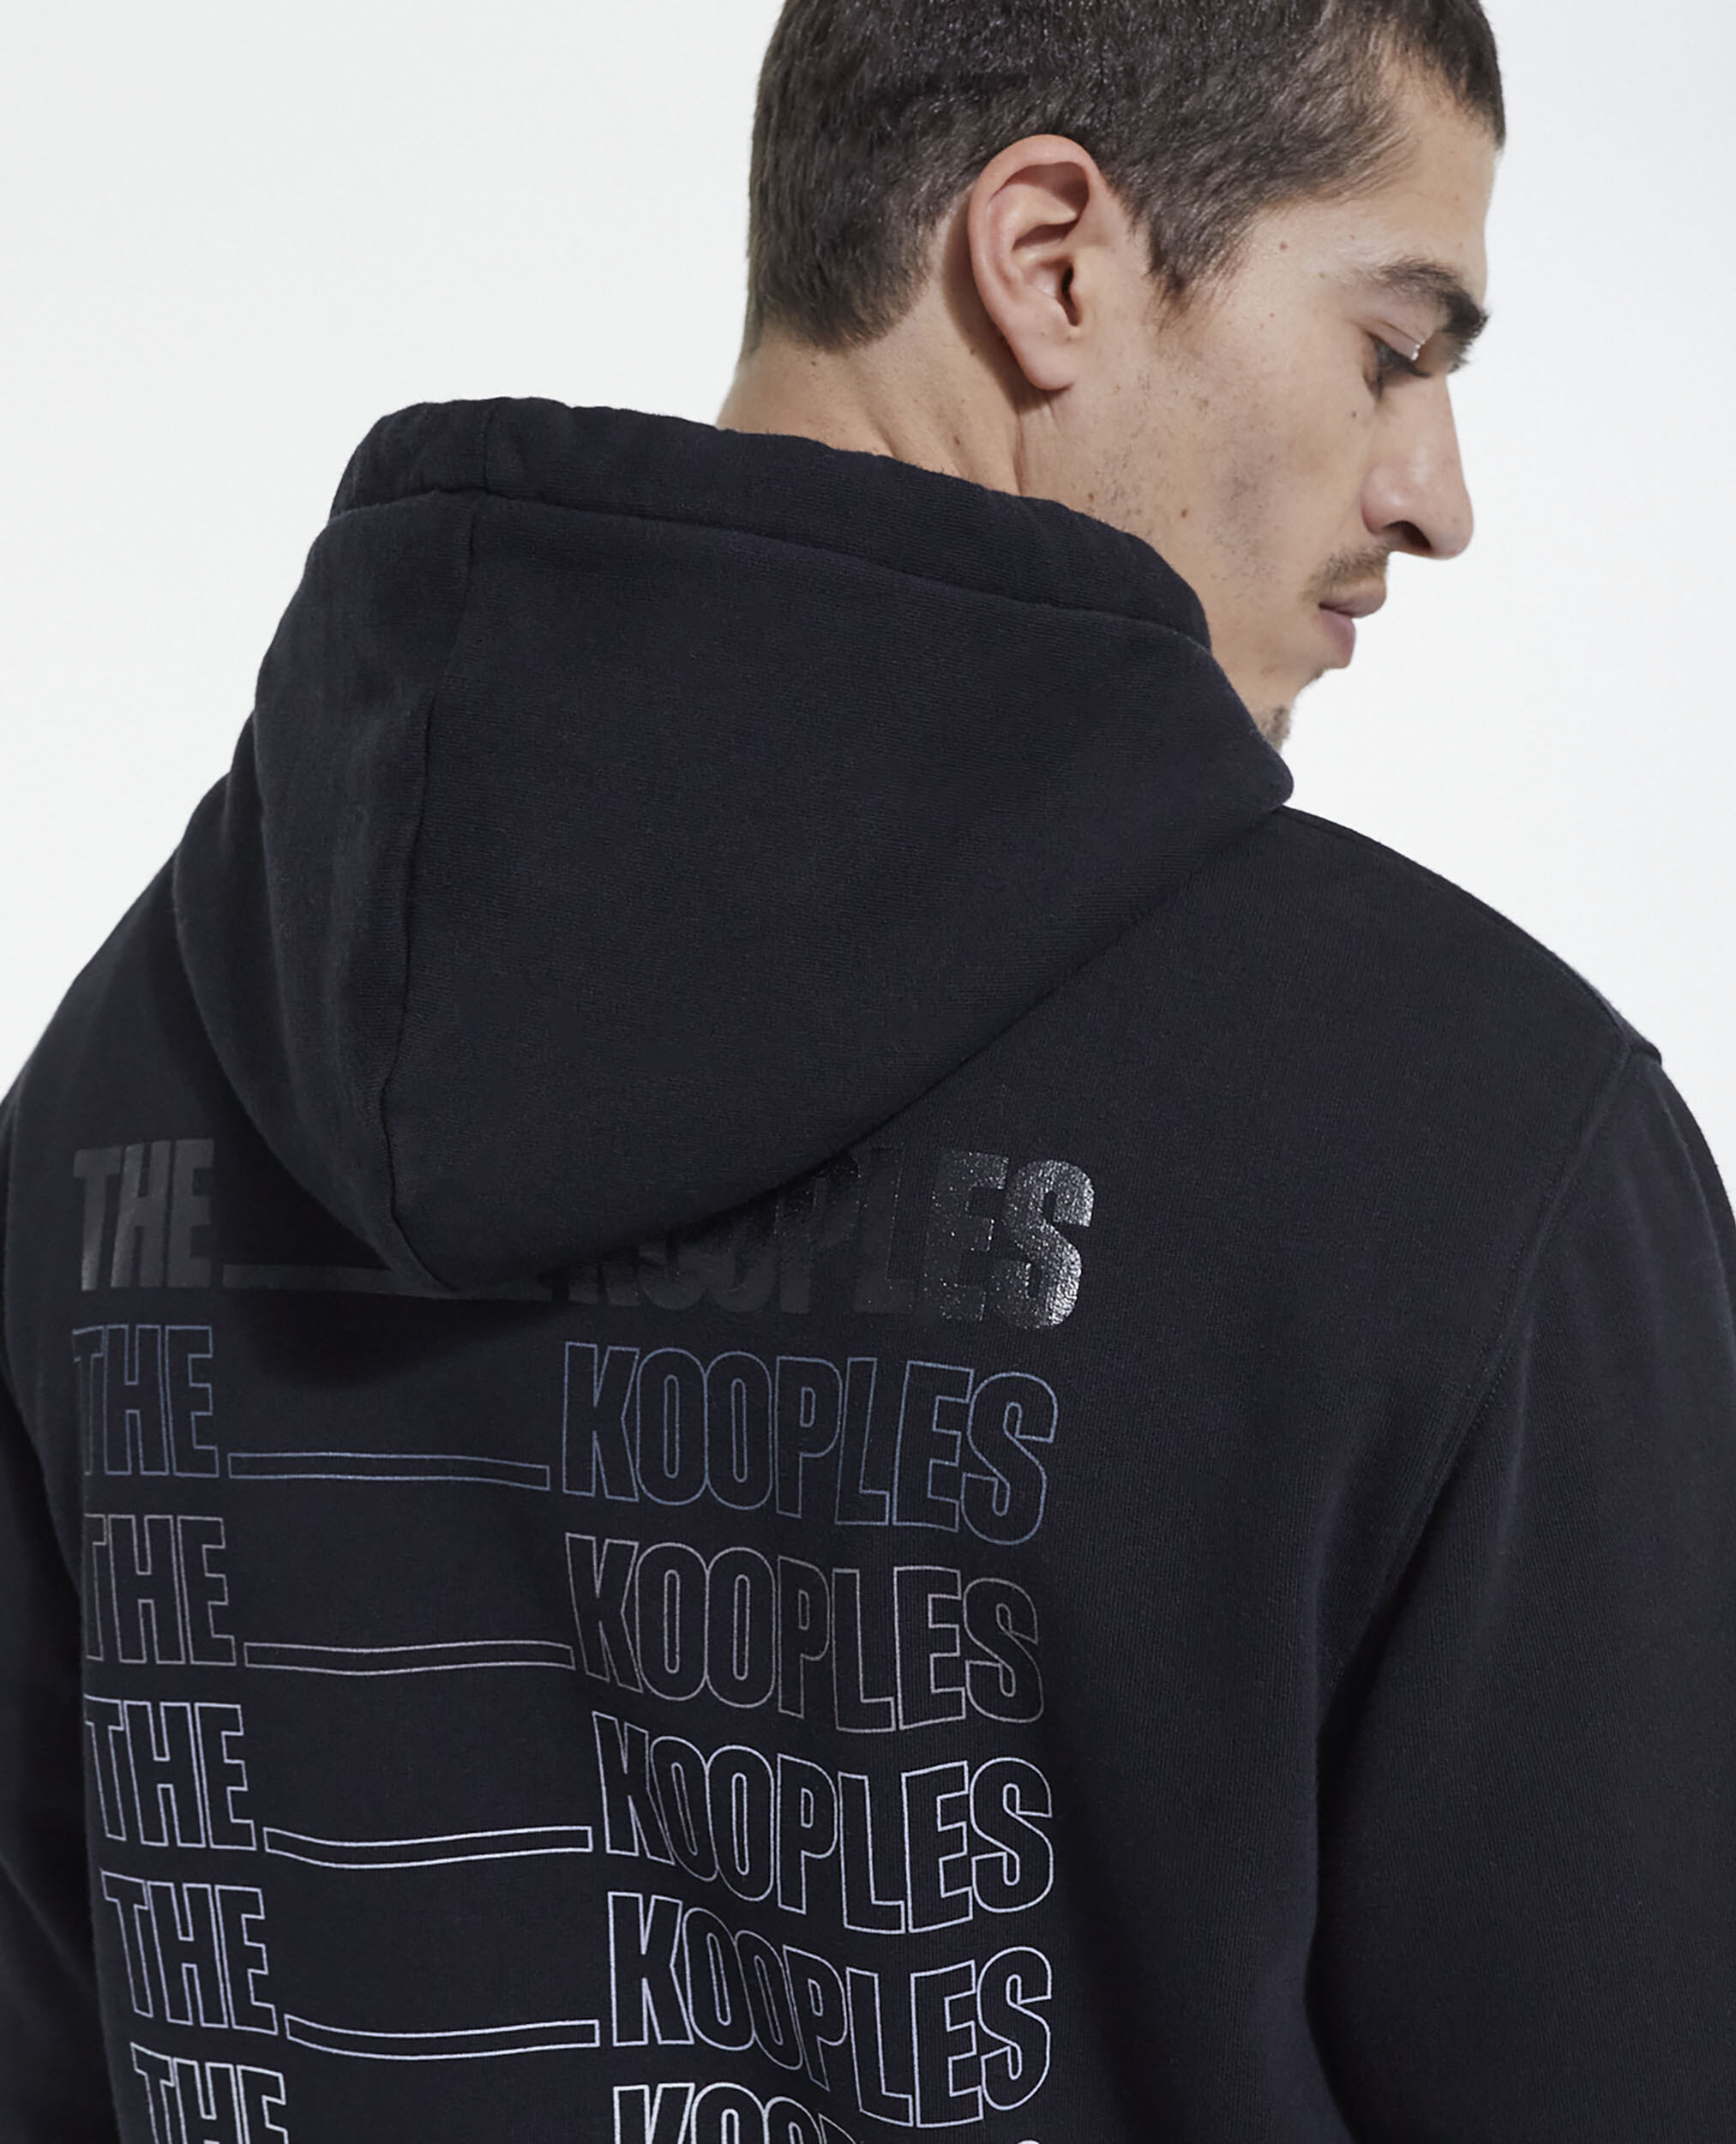 Sweatshirt logo The Kooples noir, BLACK, hi-res image number null